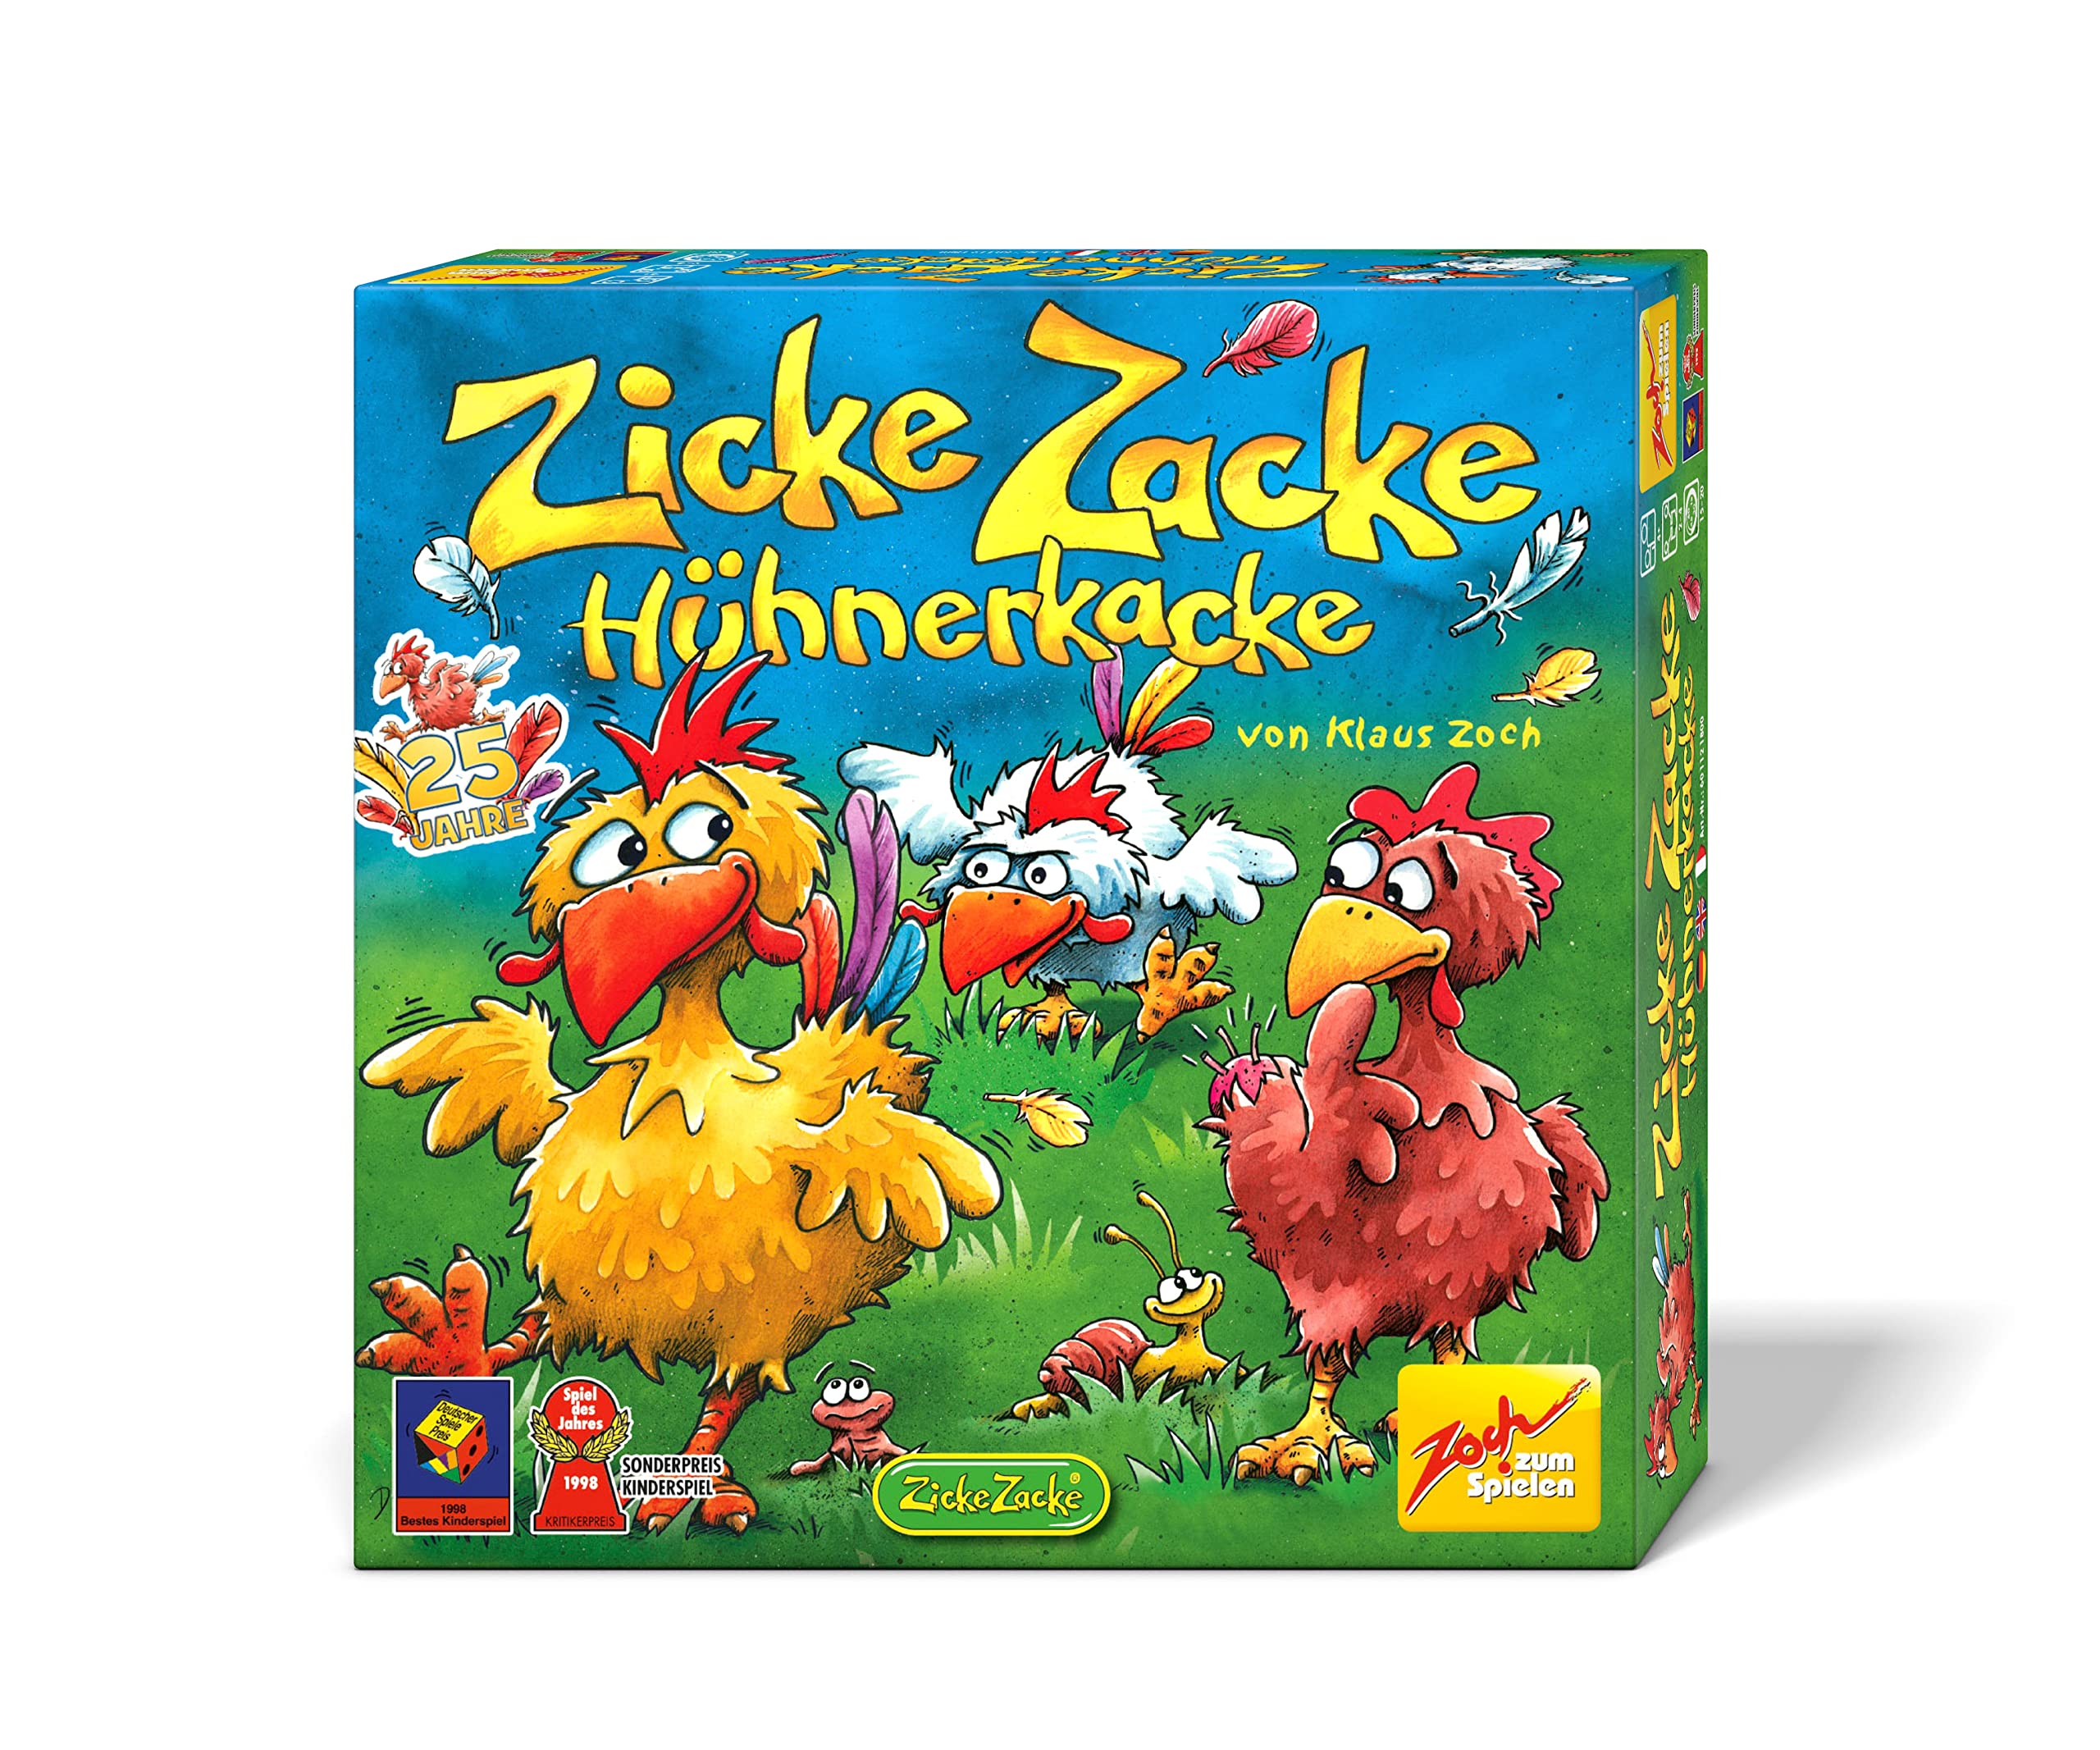 Zoch 601121800 Zicke Zacke Hühnerkacke – das rasante Memory-Gedächtnisrennen, Kinderspiel des Jahres 1998, 2-4 Spieler, für Jungen und Mädchen ab 4 Jahren